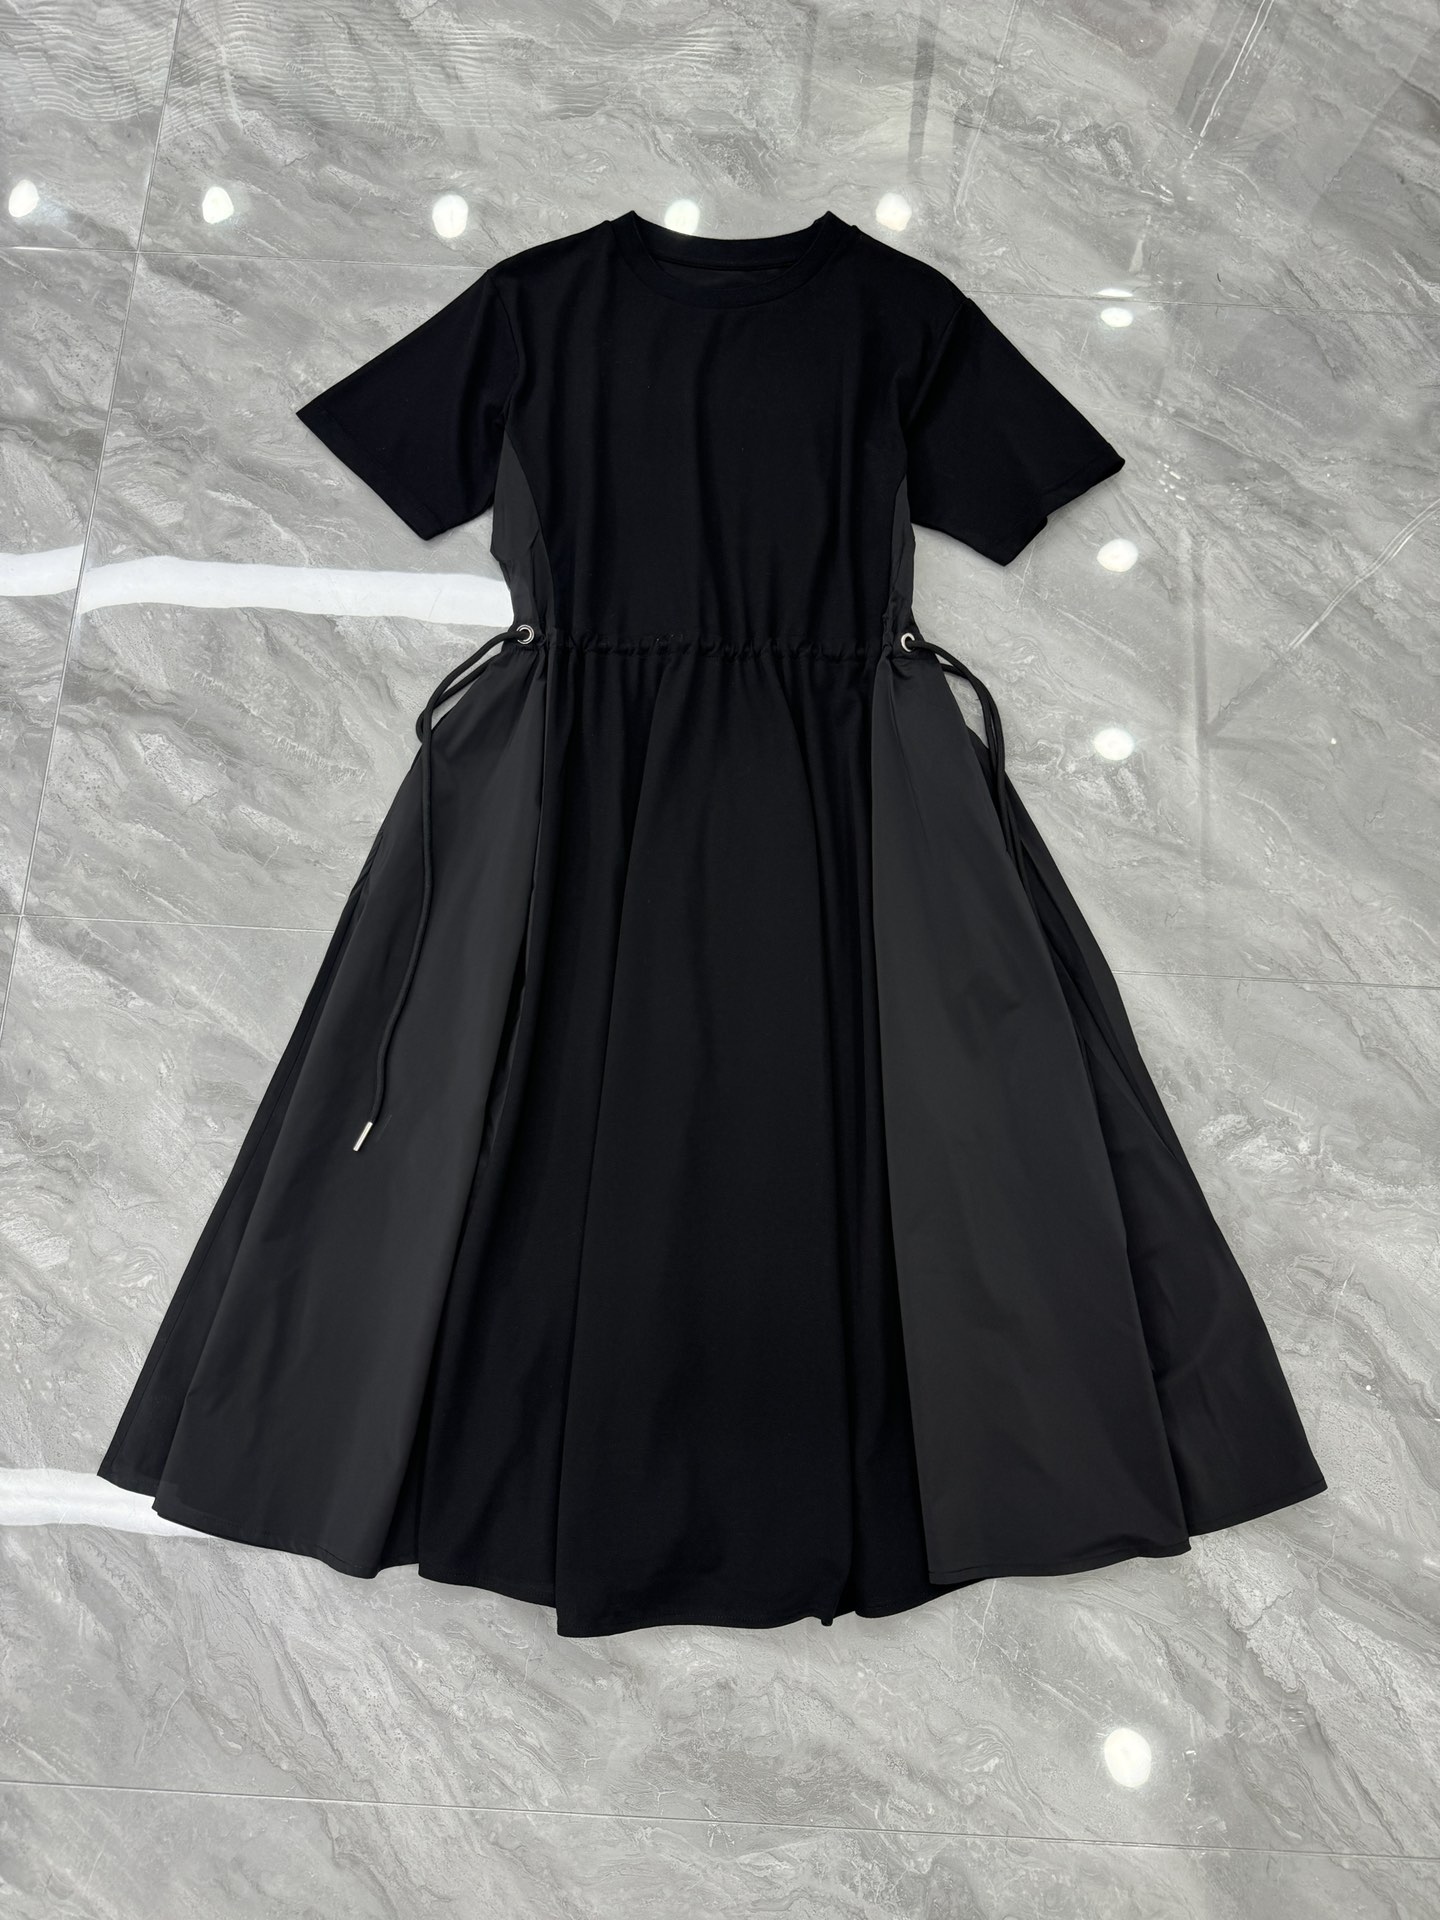 saca*新款日式暗黑系T裙，简约赫本珠地棉拼梭织布小黑裙。黑色的沉稳与包容，即使在夏日也是难掩其不张扬却百搭的实穿性。单层针织螺纹小圆领，不争不俗的表现力，亲和从容，轻落肩直筒式版型，最为舒适的裙形结构，日常上身可以直挂于身，自由垂散的裙身，从上至下的包裹度自由舒张，简单而不无趣，前后腰身内置抽绳，需要时自由抽调腰身松量X型的上身效果，趋利避害整个裙形张弛有度。自由可调的裙形，赋予持久的生命力，跨越年龄线的好穿，整个裙身两种面料的拼接，赋予层次内容大身的珠地网眼结构，全棉的质地细腻软滑自左右腋